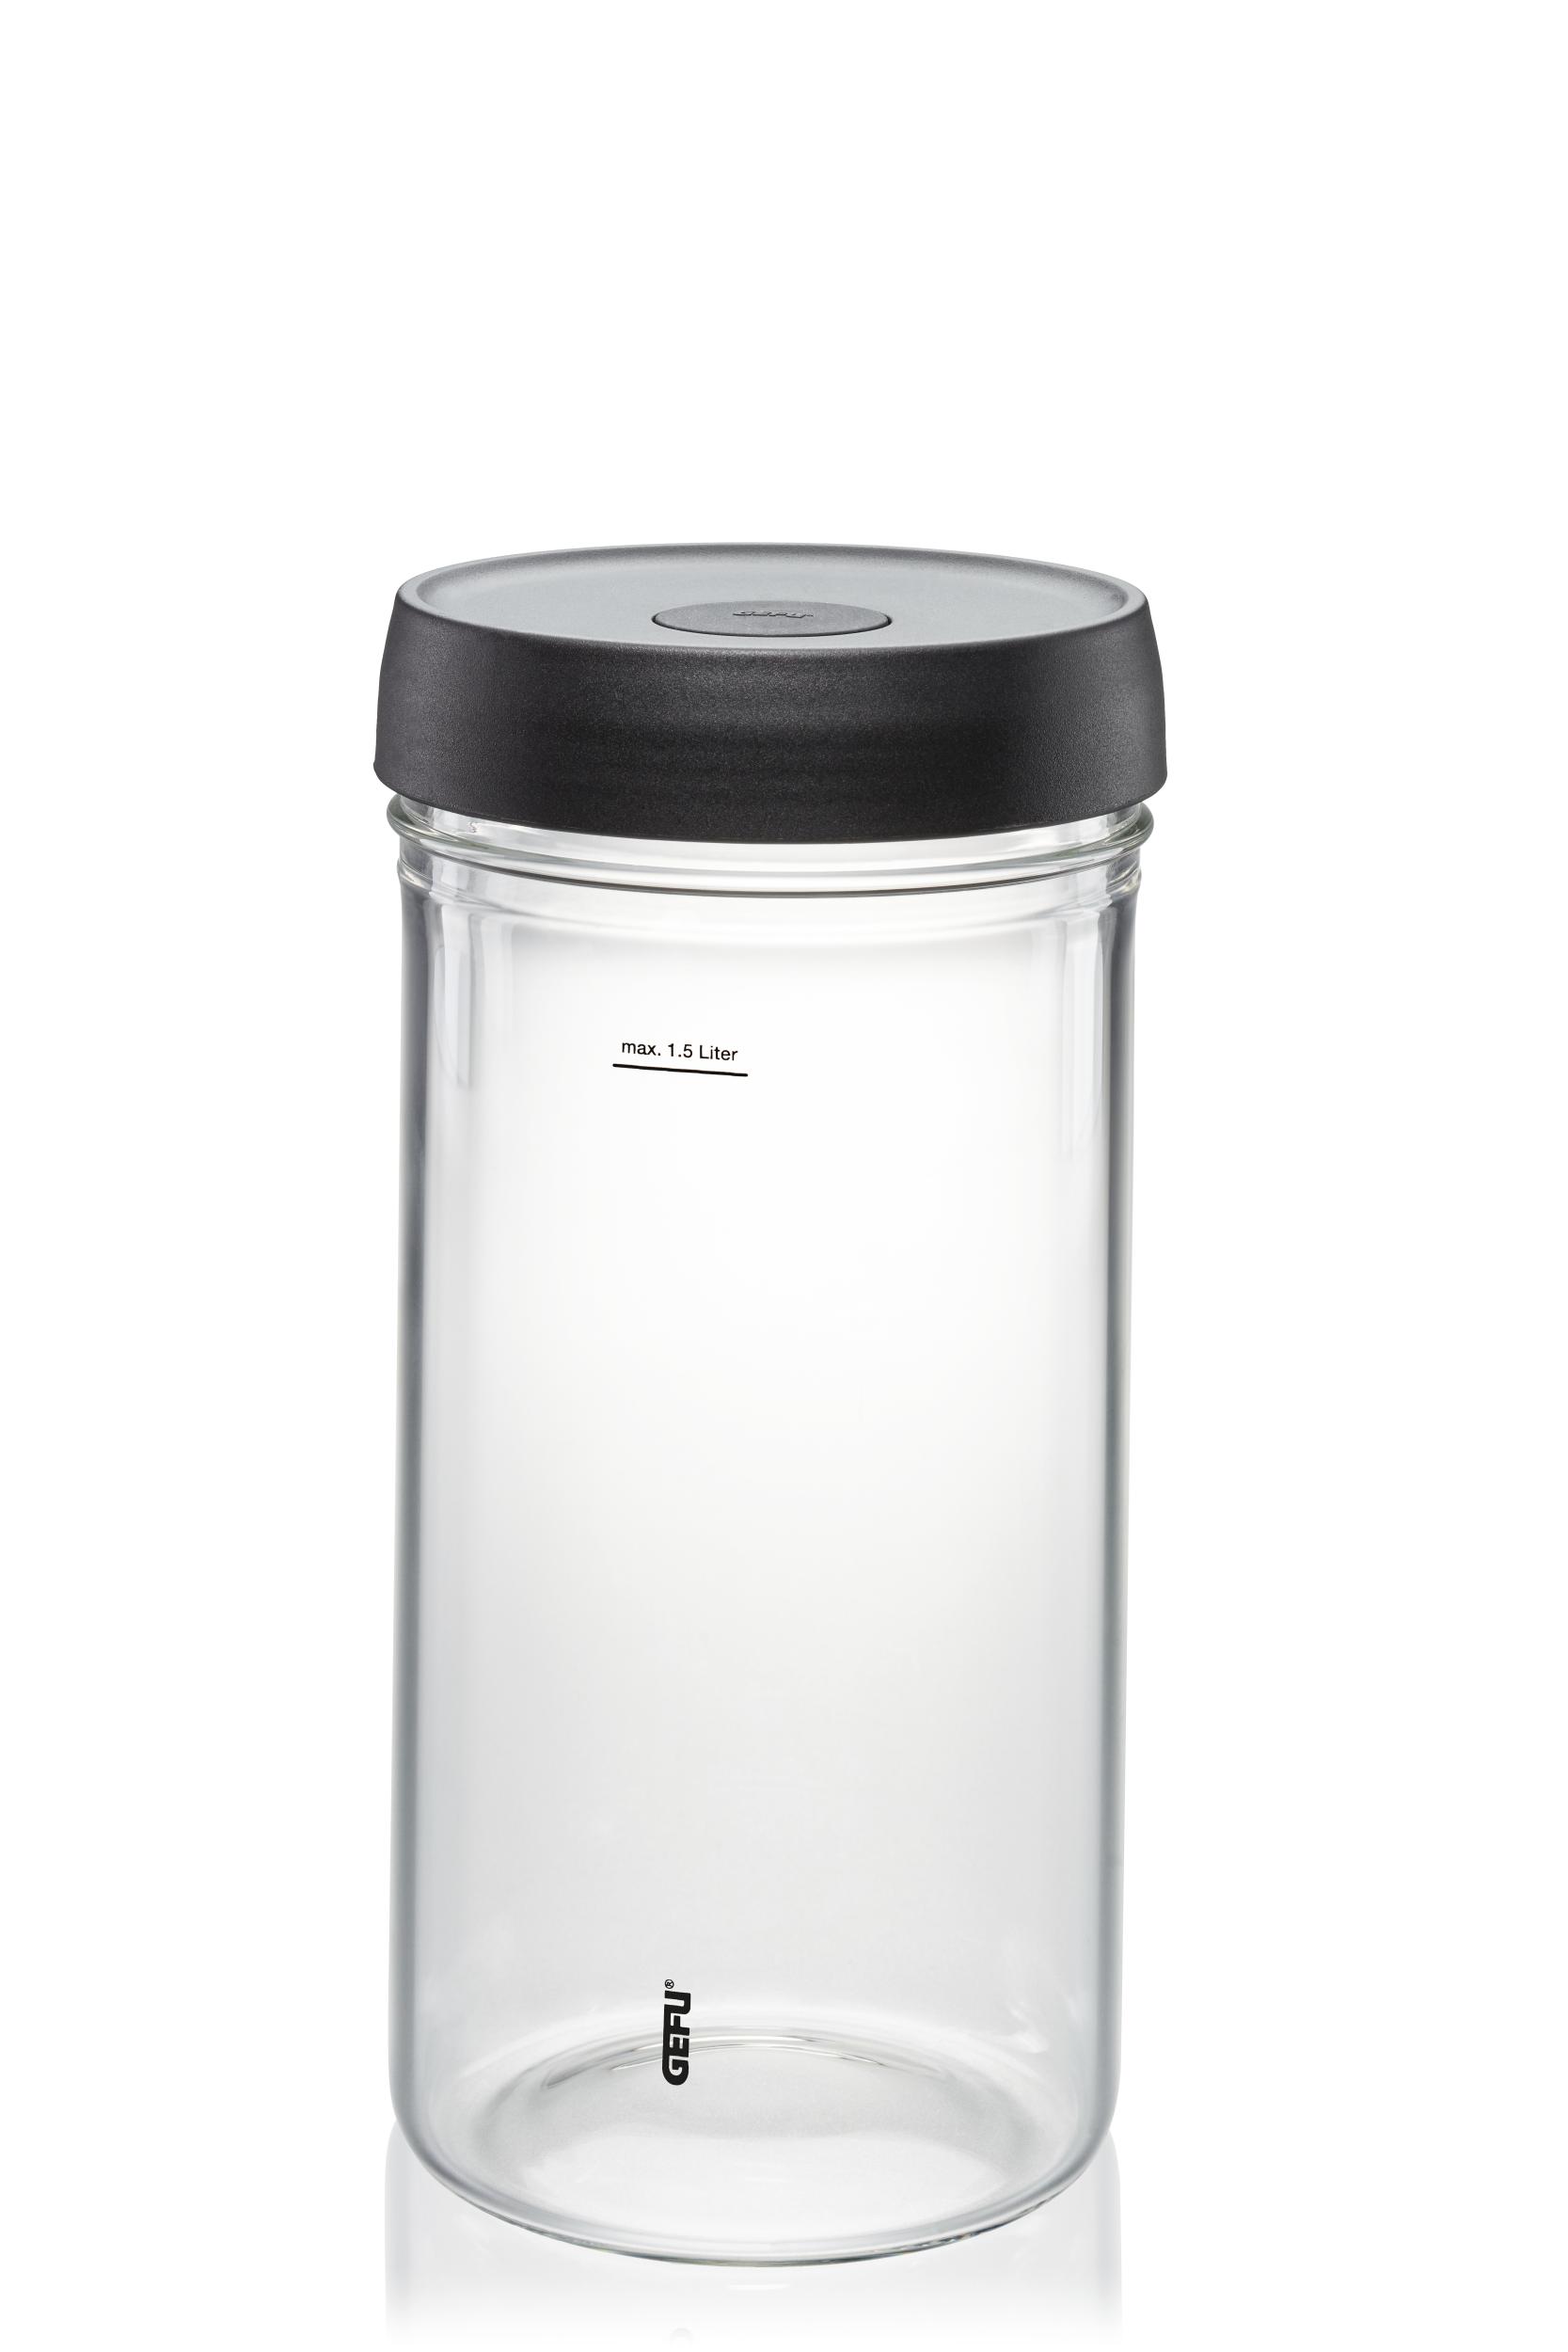 Gefu Fermentierglas NATIVO, 1,5 Liter